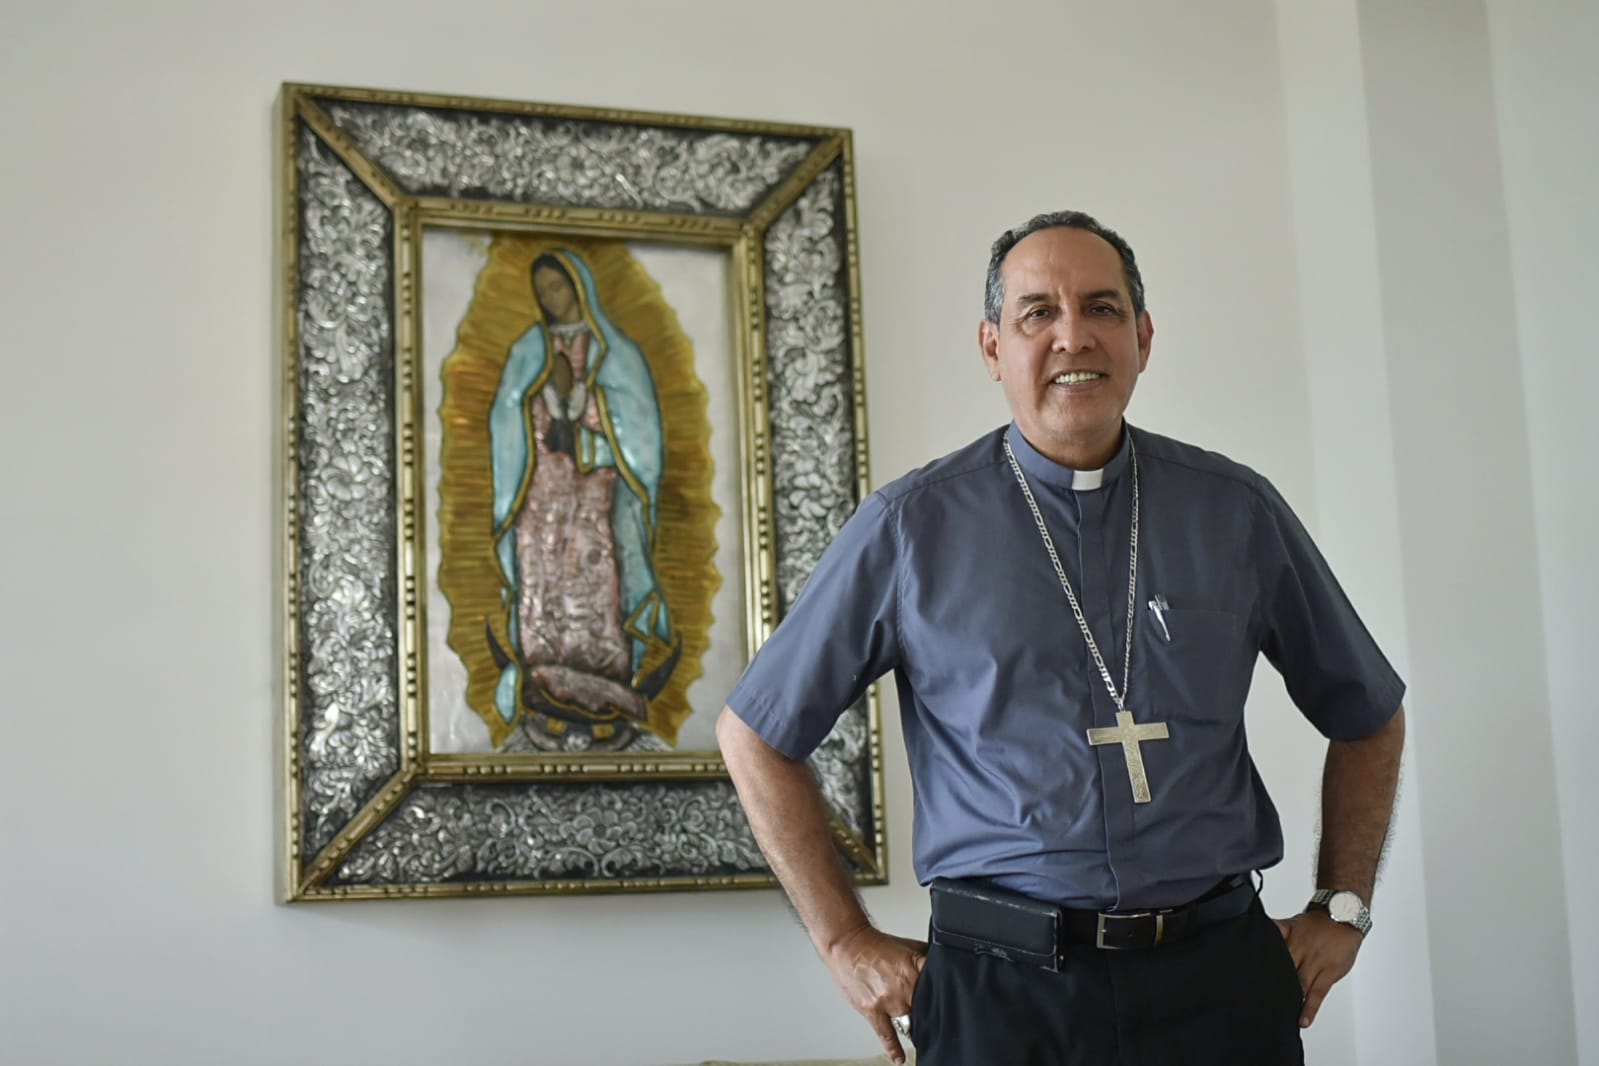 Para el Arzobispo de Barranquilla, "Catedratón es un evento que reúne a los atlanticenses".